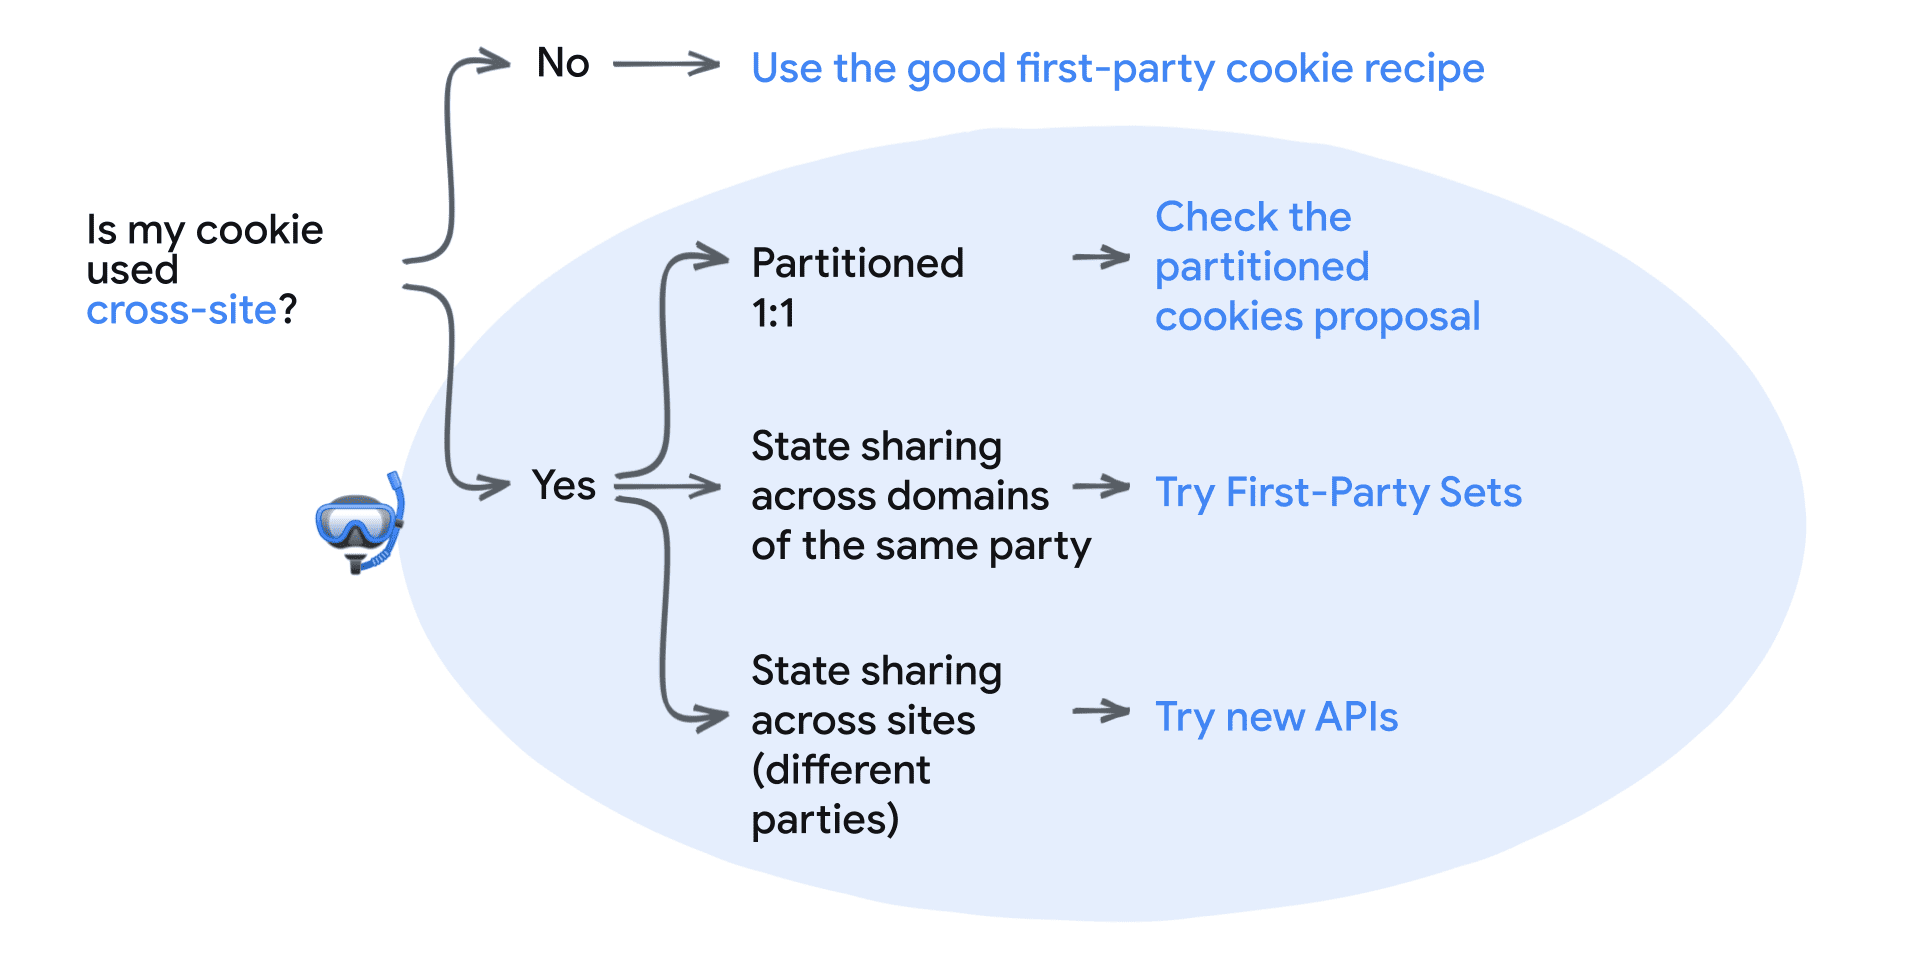 ¿Mi cookie se usa en varios sitios? No: Usar la buena receta de galletas propias.
Sí: Particionada 1:1 (verificación de la propuesta de CHIPS), uso compartido de estado entre dominios de la misma parte, uso compartido propio, uso compartido de estado entre sitios (diferentes partes) y probar las nuevas APIs